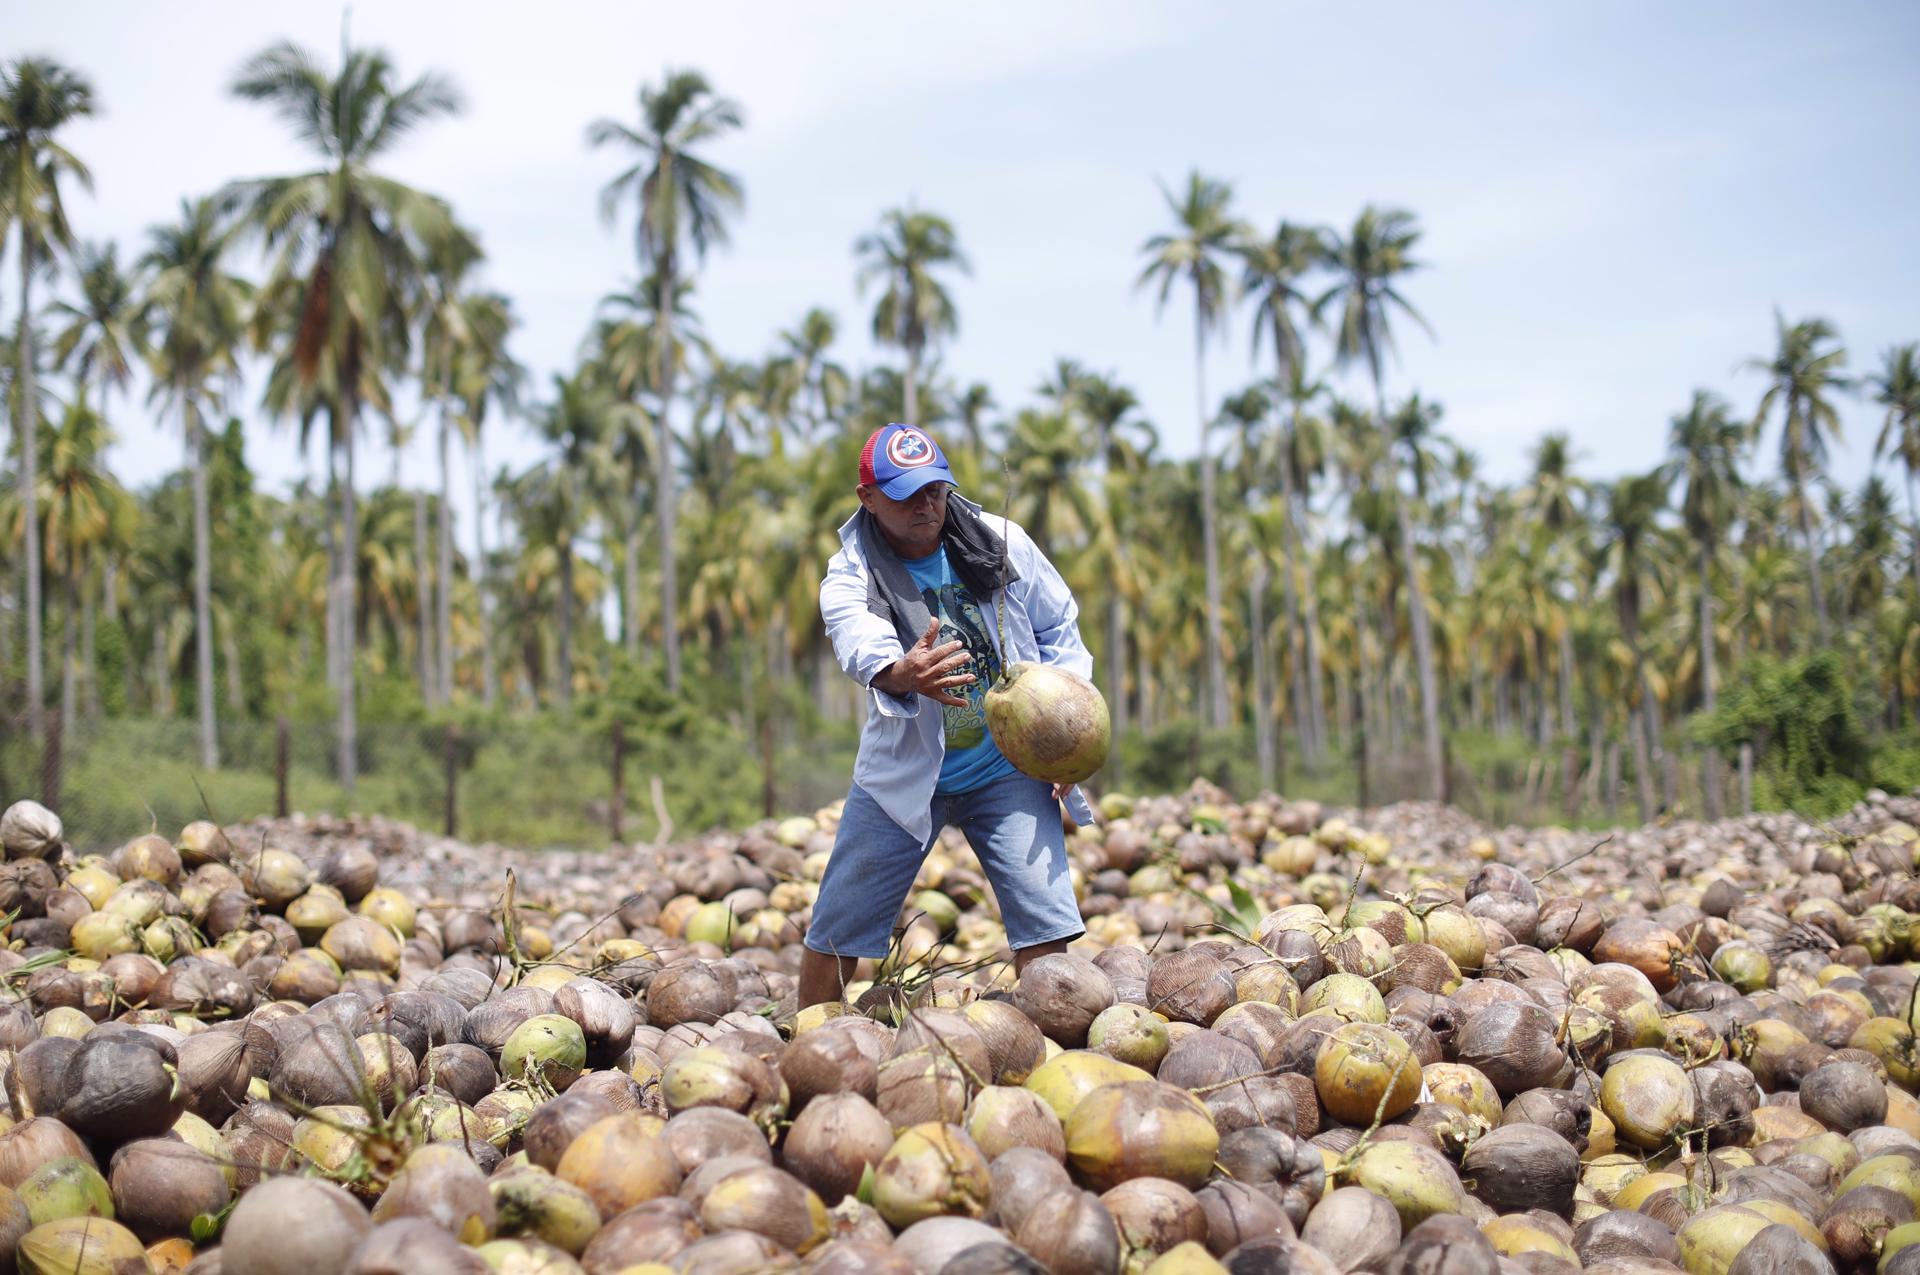 L'illa Espíritu Santo a El Salvador es manté amb la fabricació d'oli de coco. EFE/Rodrigo Sura